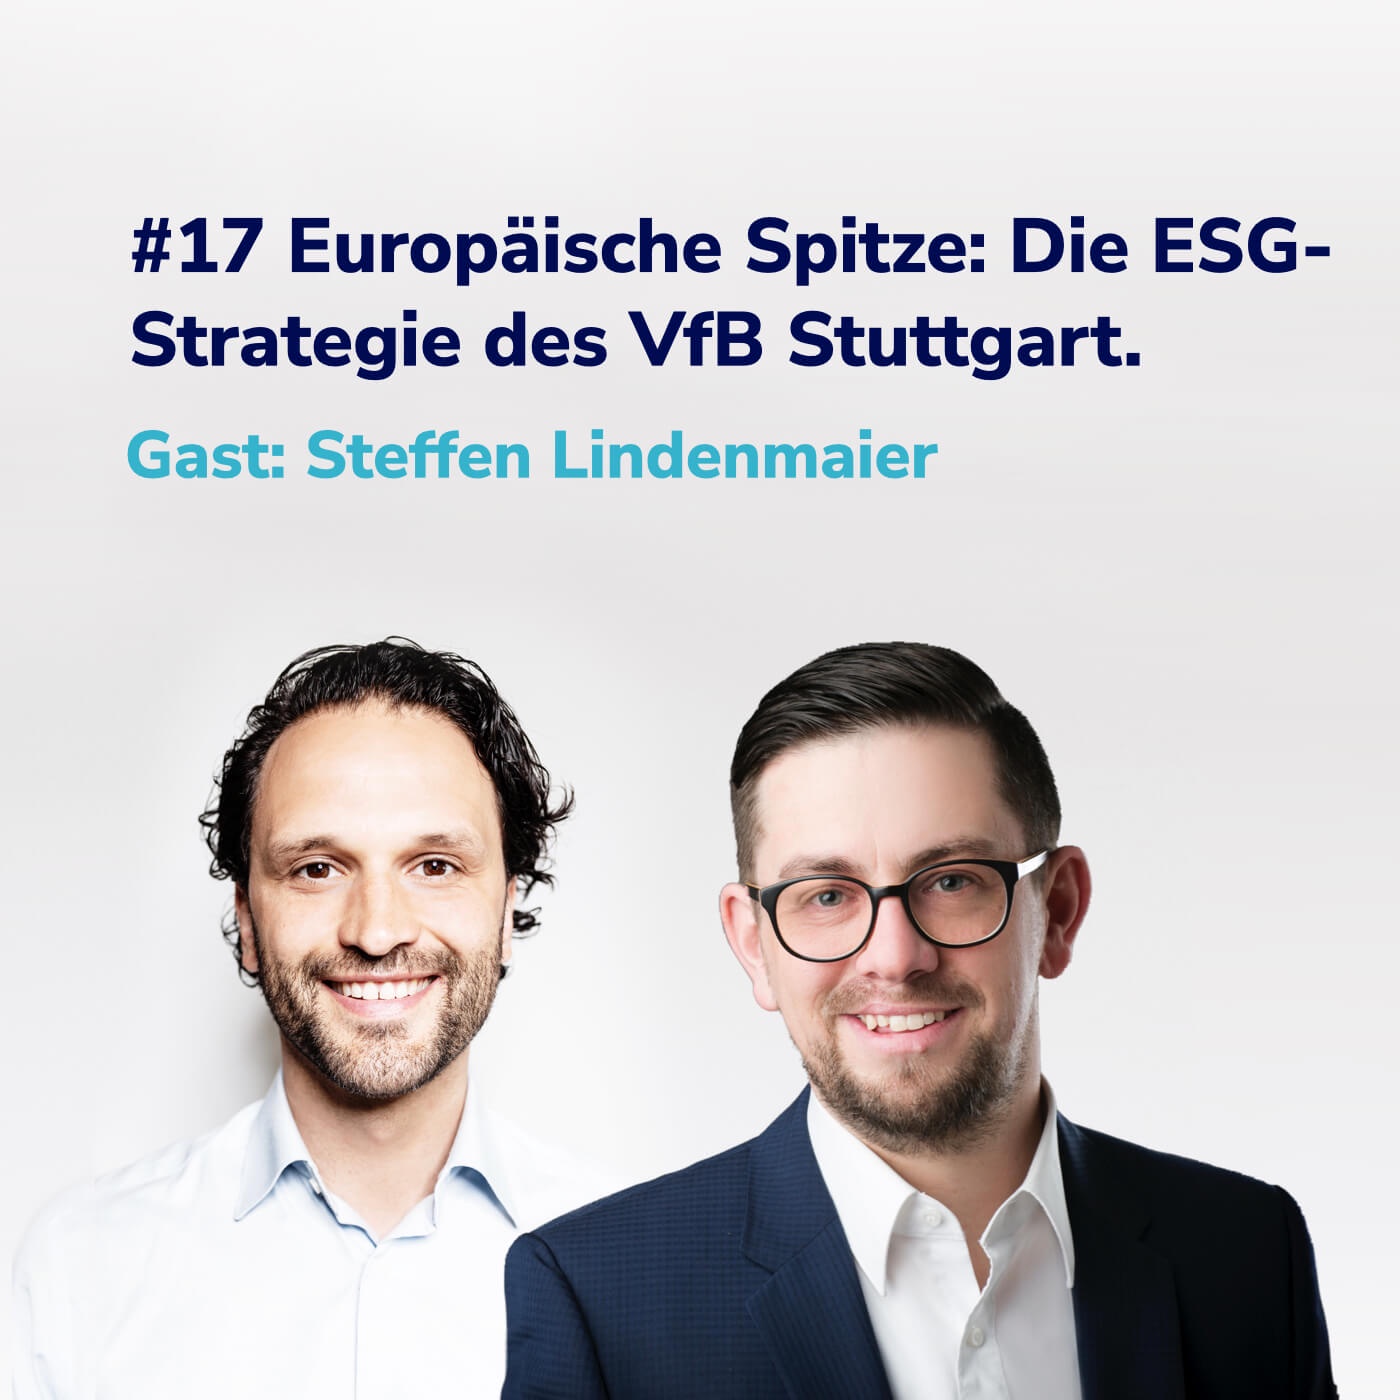 #17 Europäische Spitze: Die ESG-Strategie des VfB Stuttgart I Gast: Steffen Lindenmaier